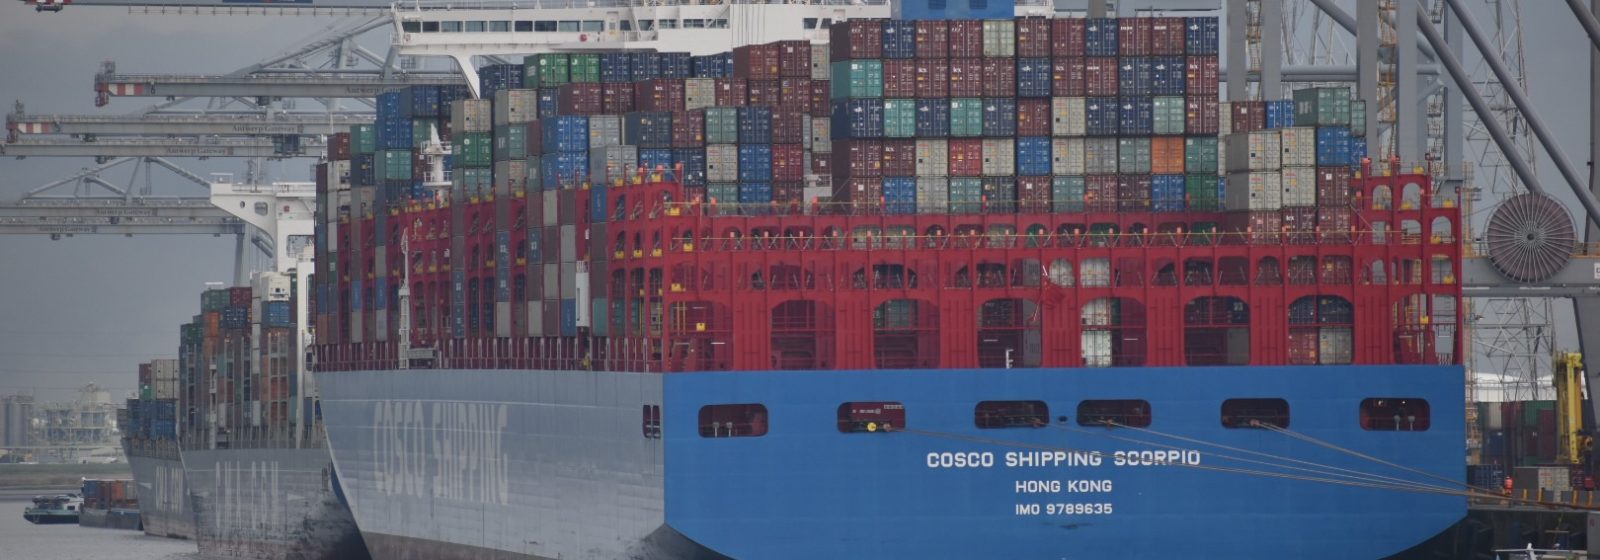 De 'Cosco Shipping Scorpio' van 19.273 teu bij Antwerp Gateway